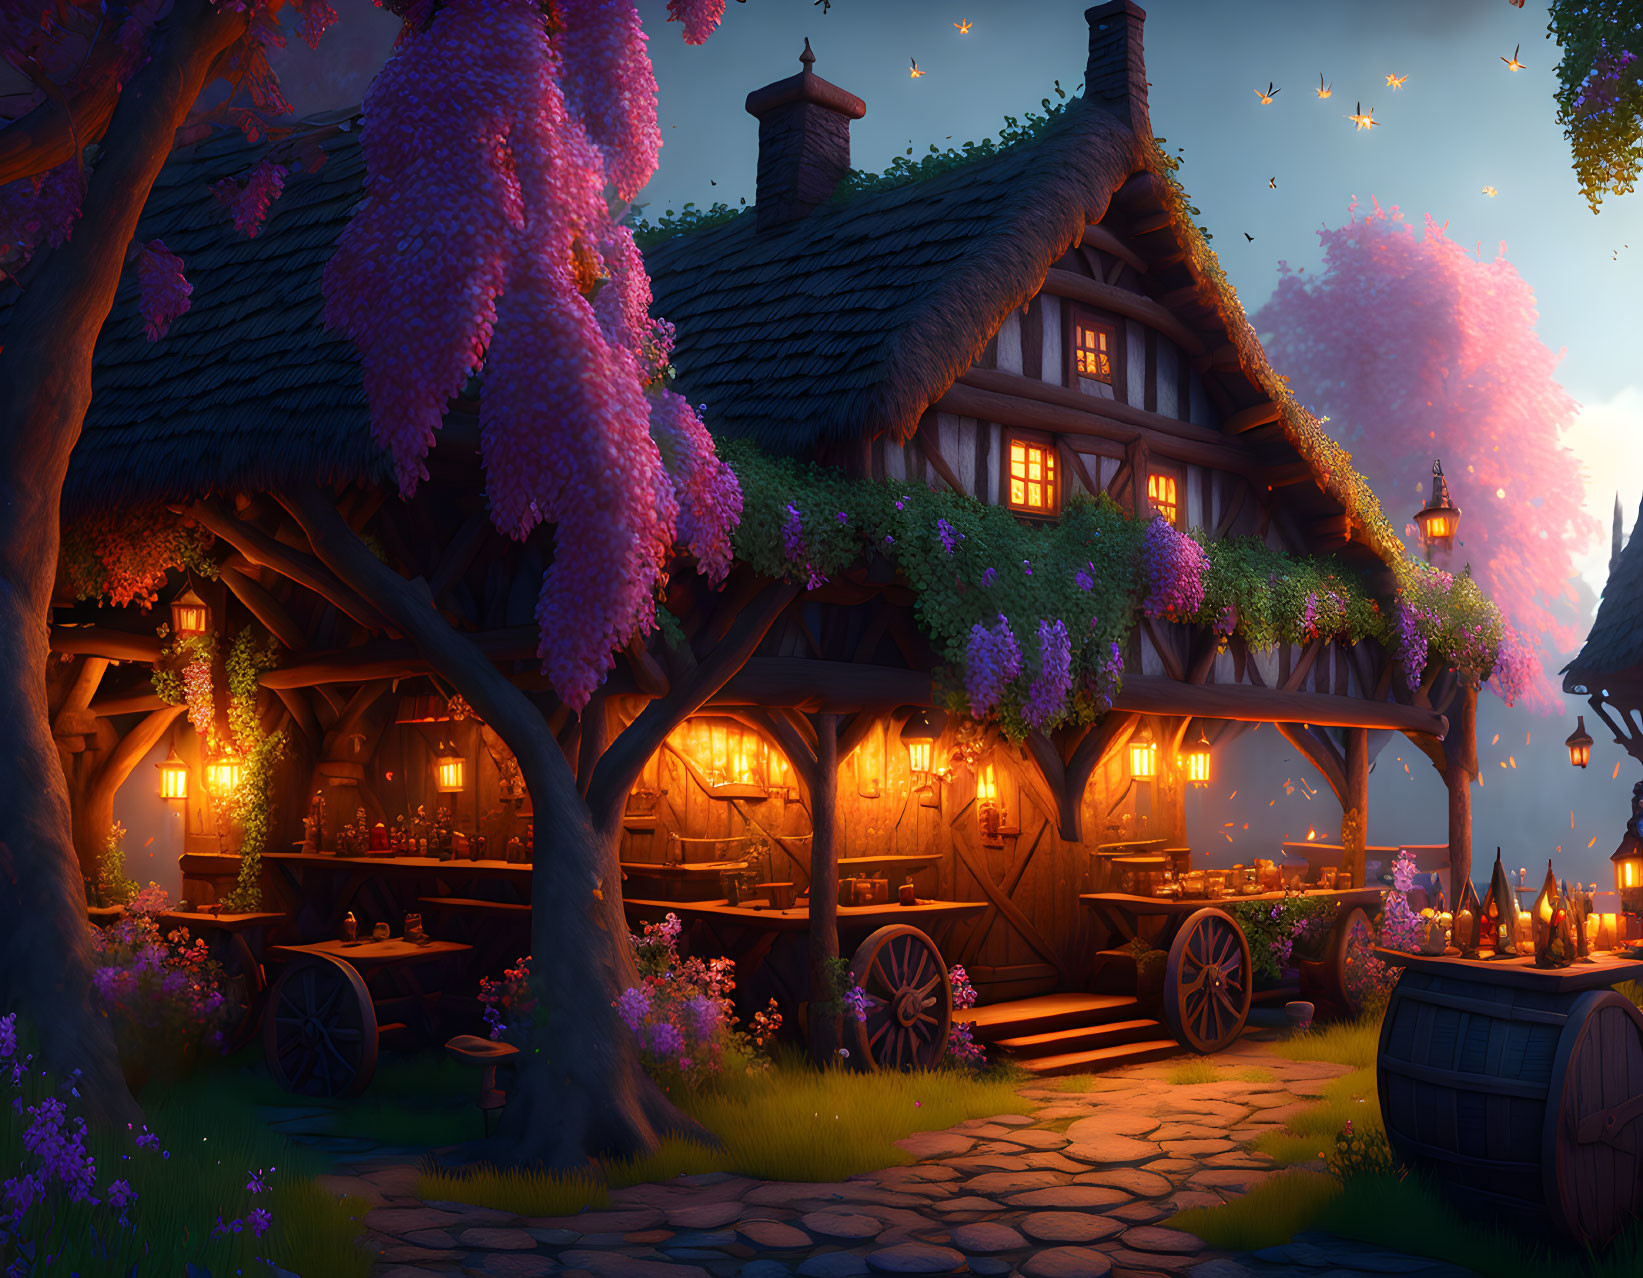 Twilight scene: Cozy tavern with wisteria under starry sky